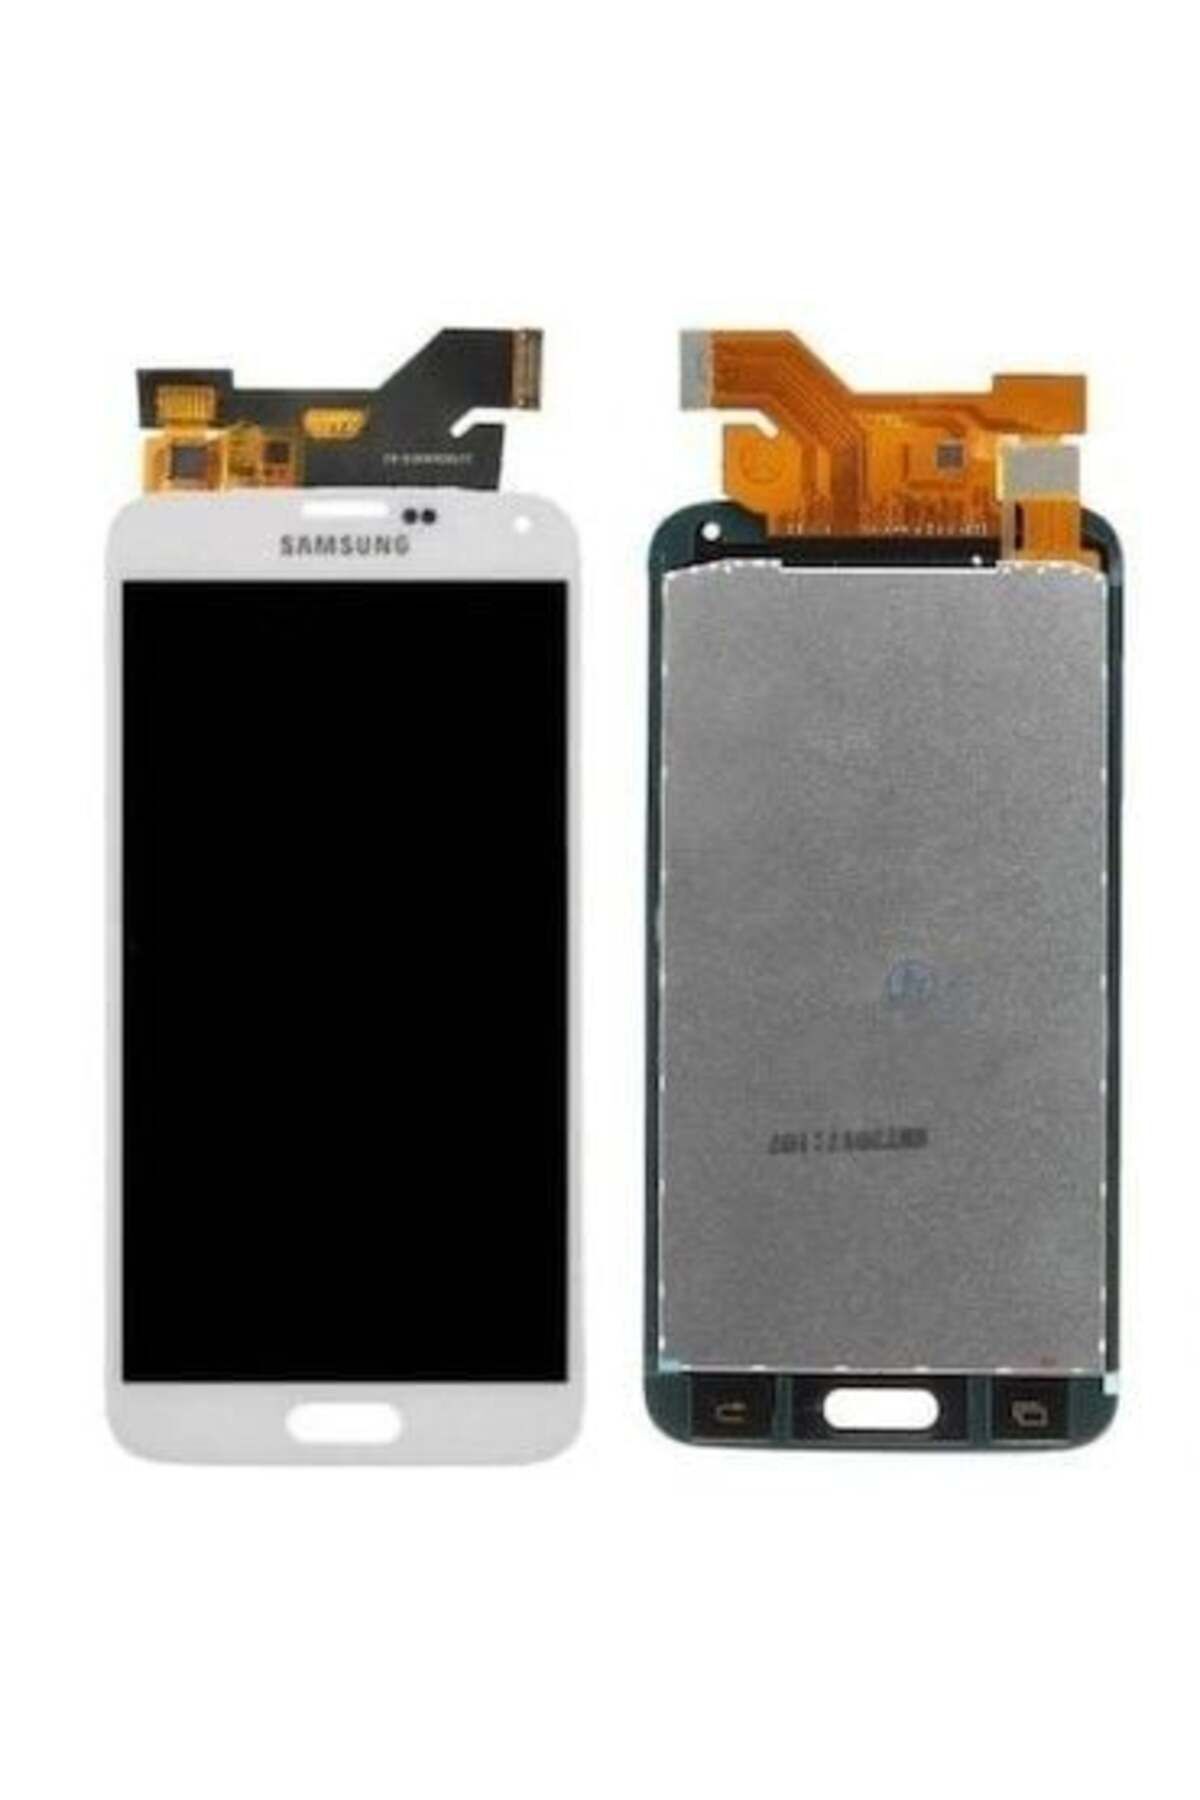 Elektrofoni Samsung Galaxy S5 Orta Tuş - Samsung Galaxy S5 Uyumlu 8684609089745